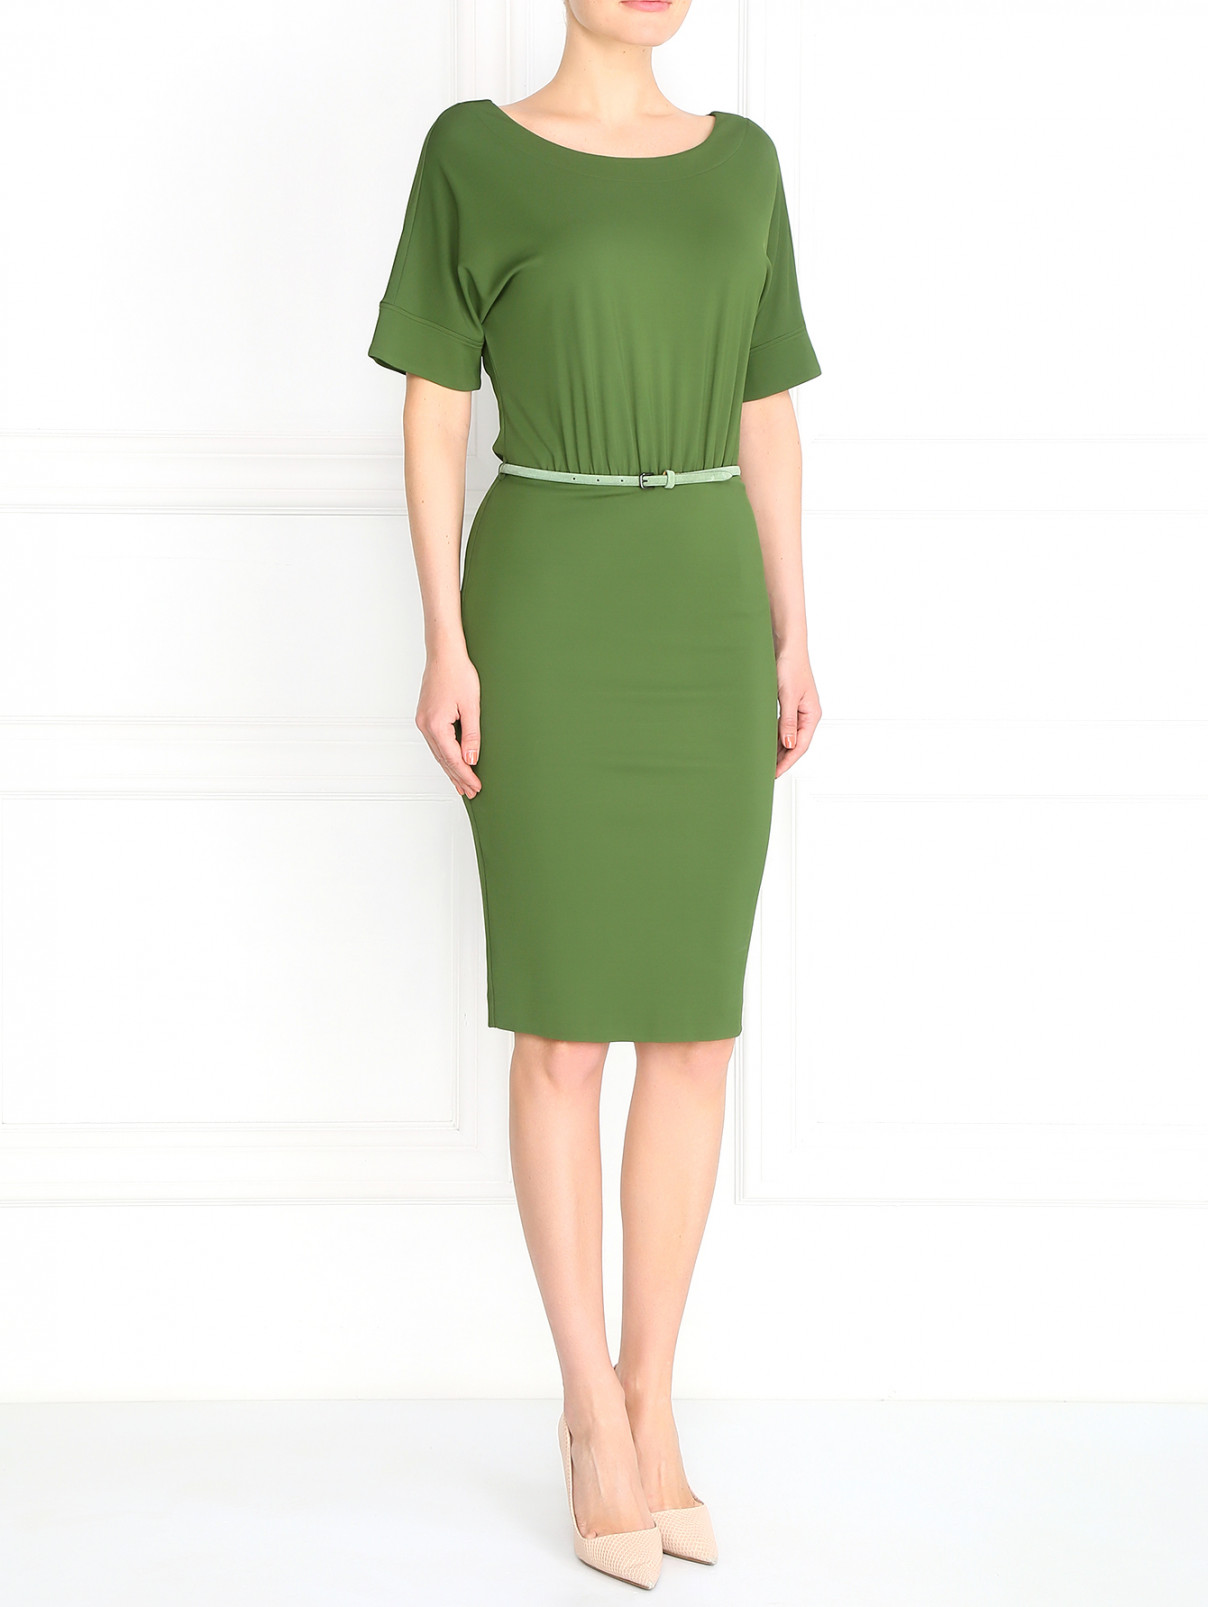 Платье с драпировкой Max Mara  –  Модель Общий вид  – Цвет:  Зеленый